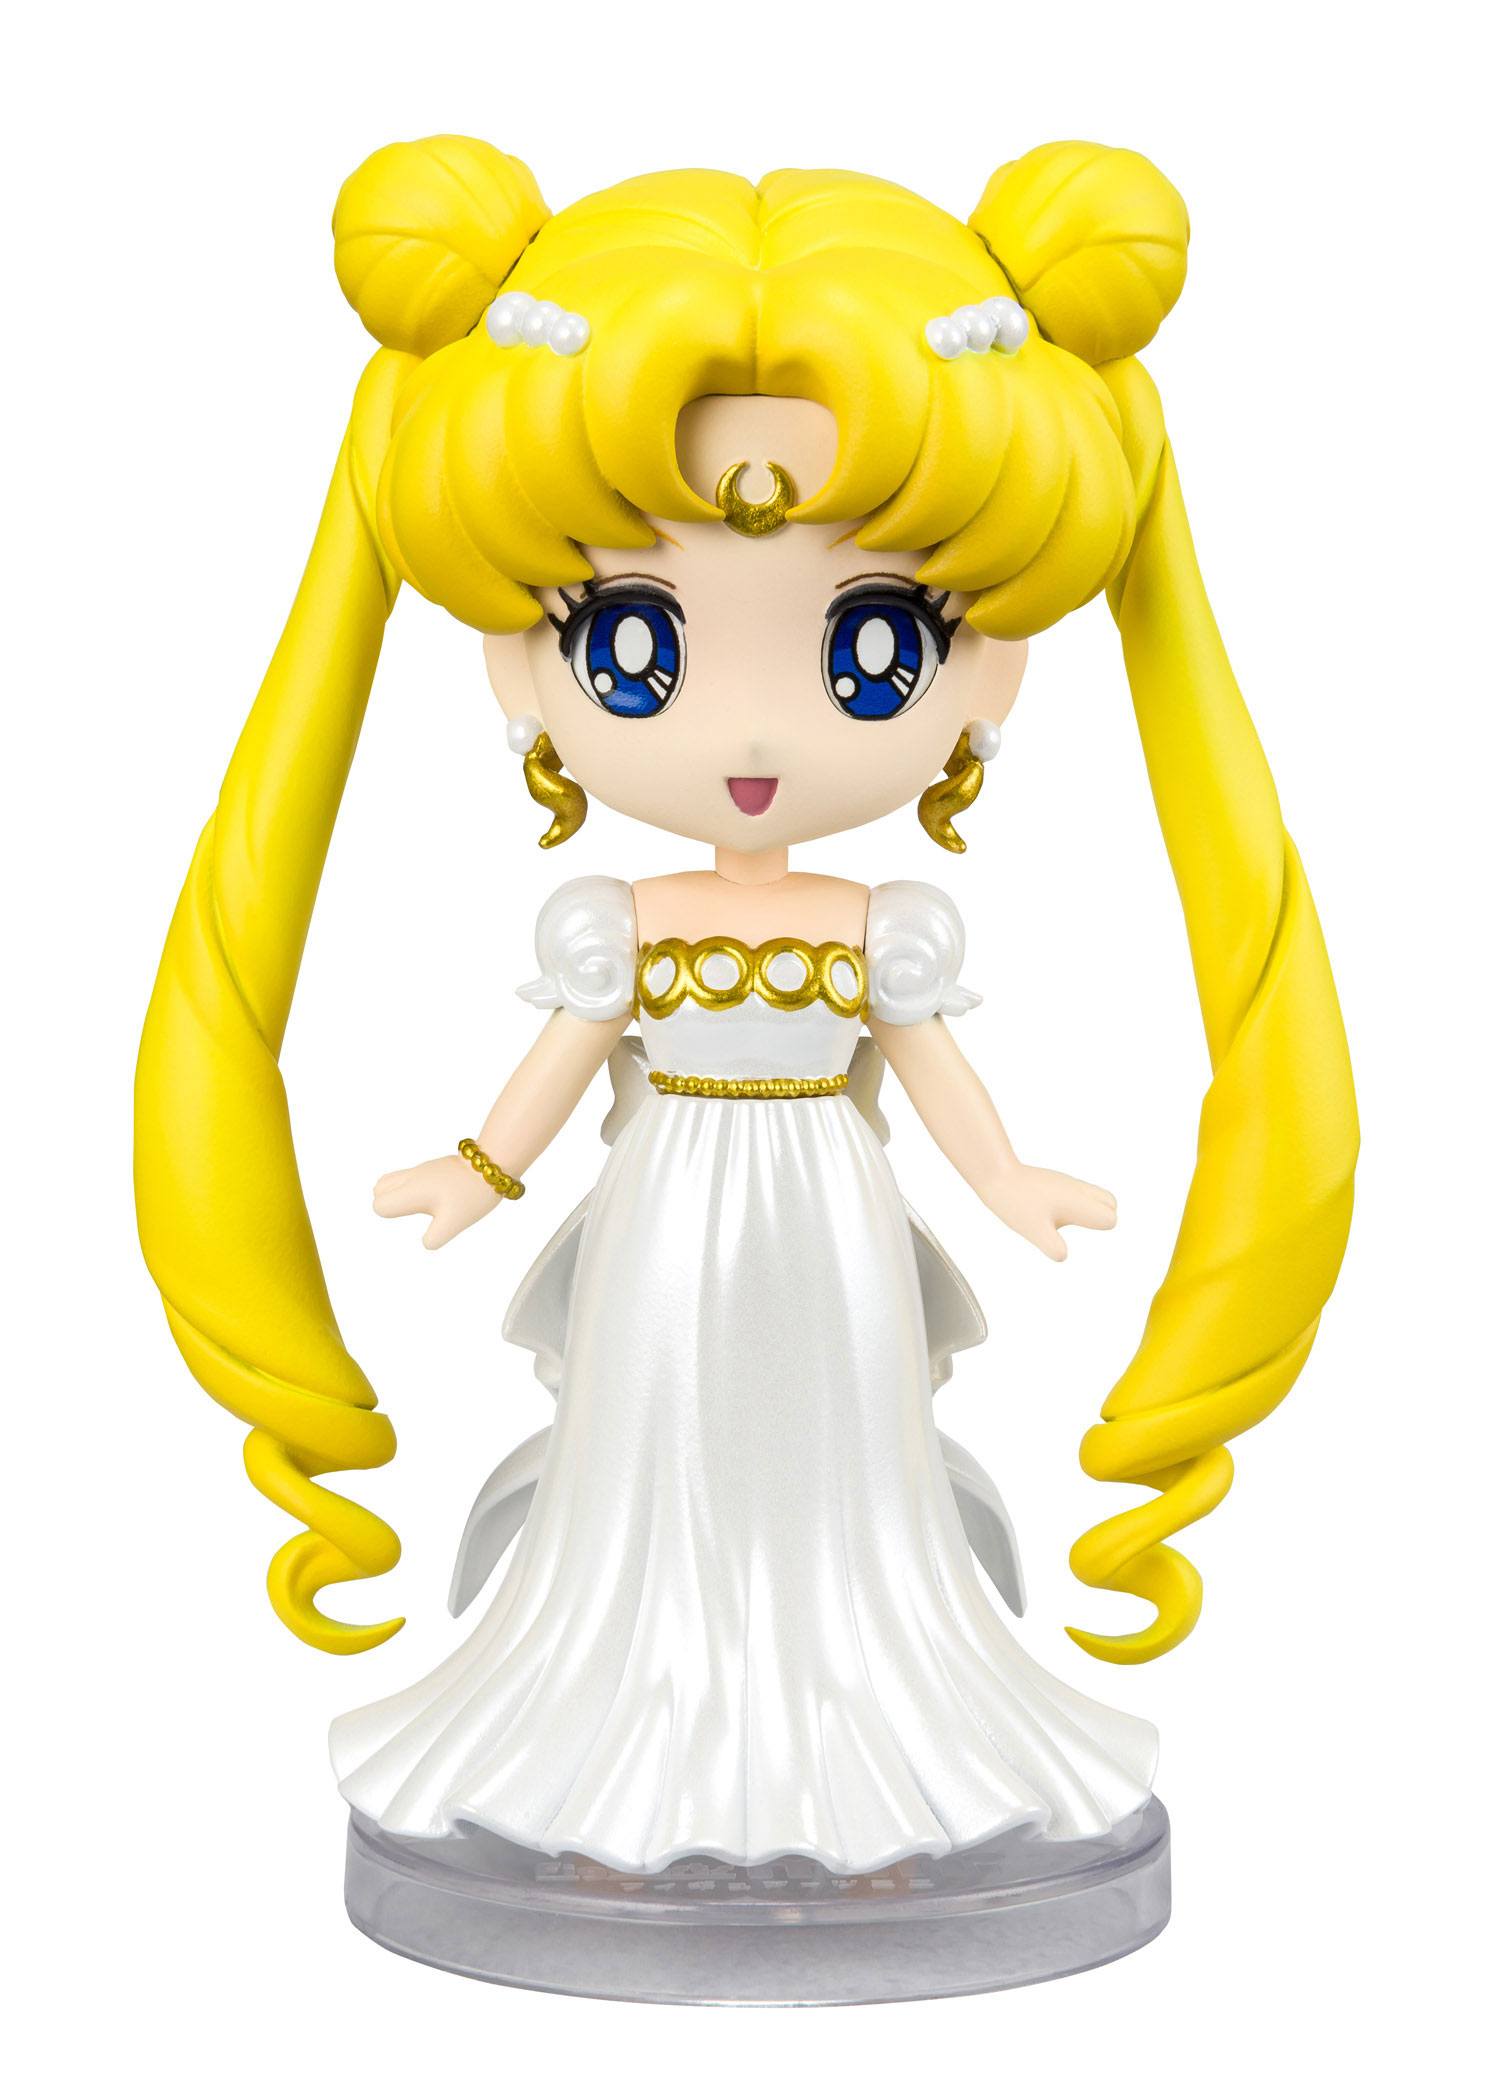 [Pre-order] Figuarts Mini "Pretty Guardian Sailor Moon" Princess Serenity